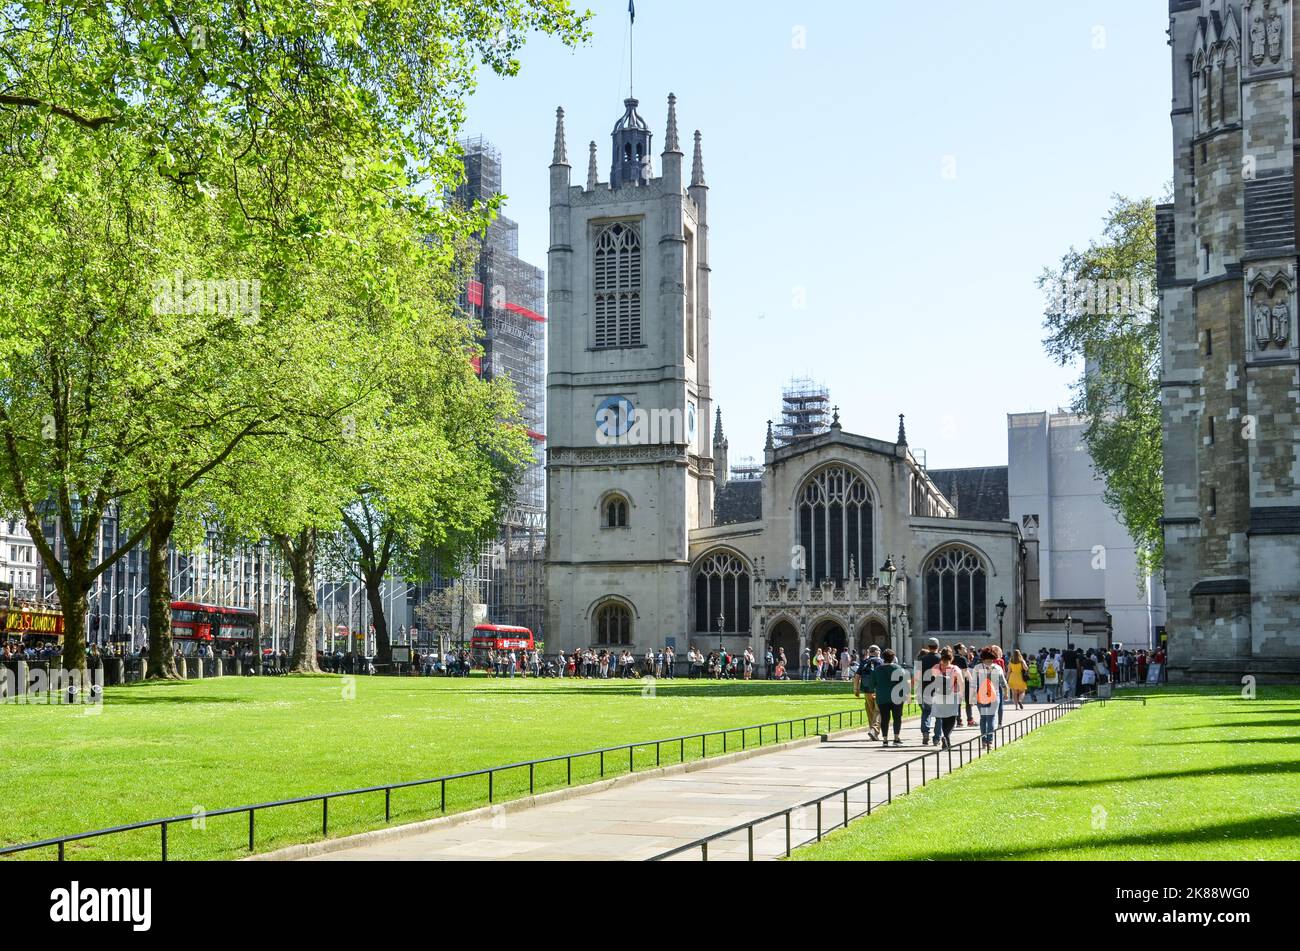 Blick auf das Westminster Abbey Gebäude in London, Großbritannien, mit Menschen, die auf einem grünen Park spazieren gehen und rote Busse parken. Stockfoto